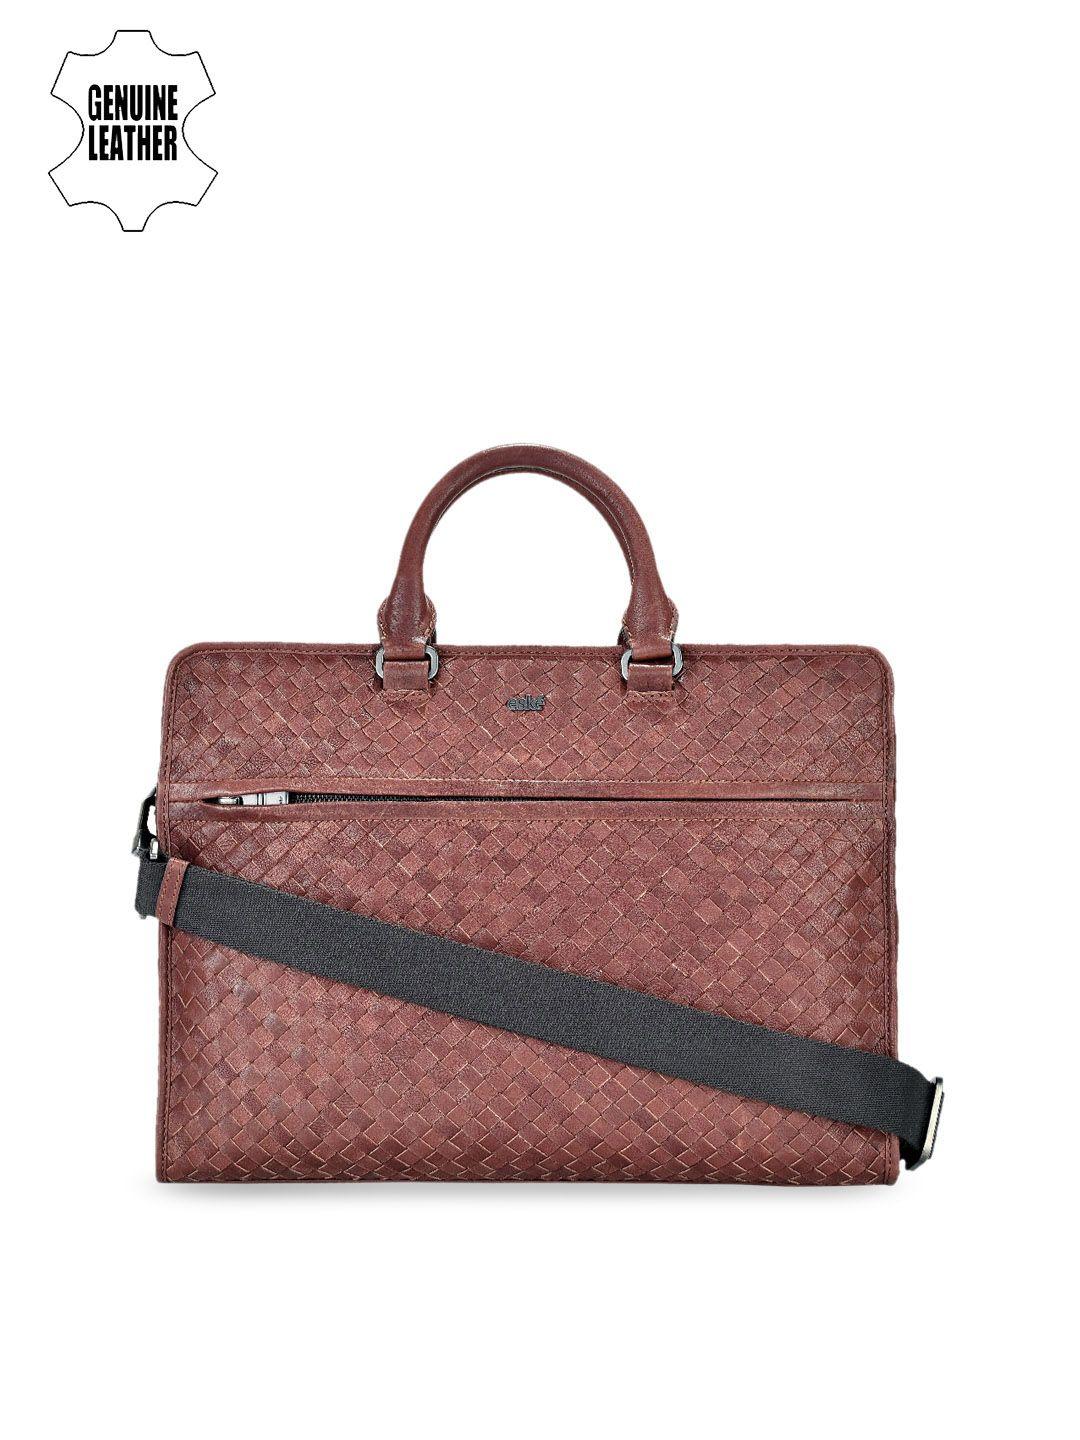 eske men brown leather textured laptop bag with sling strap